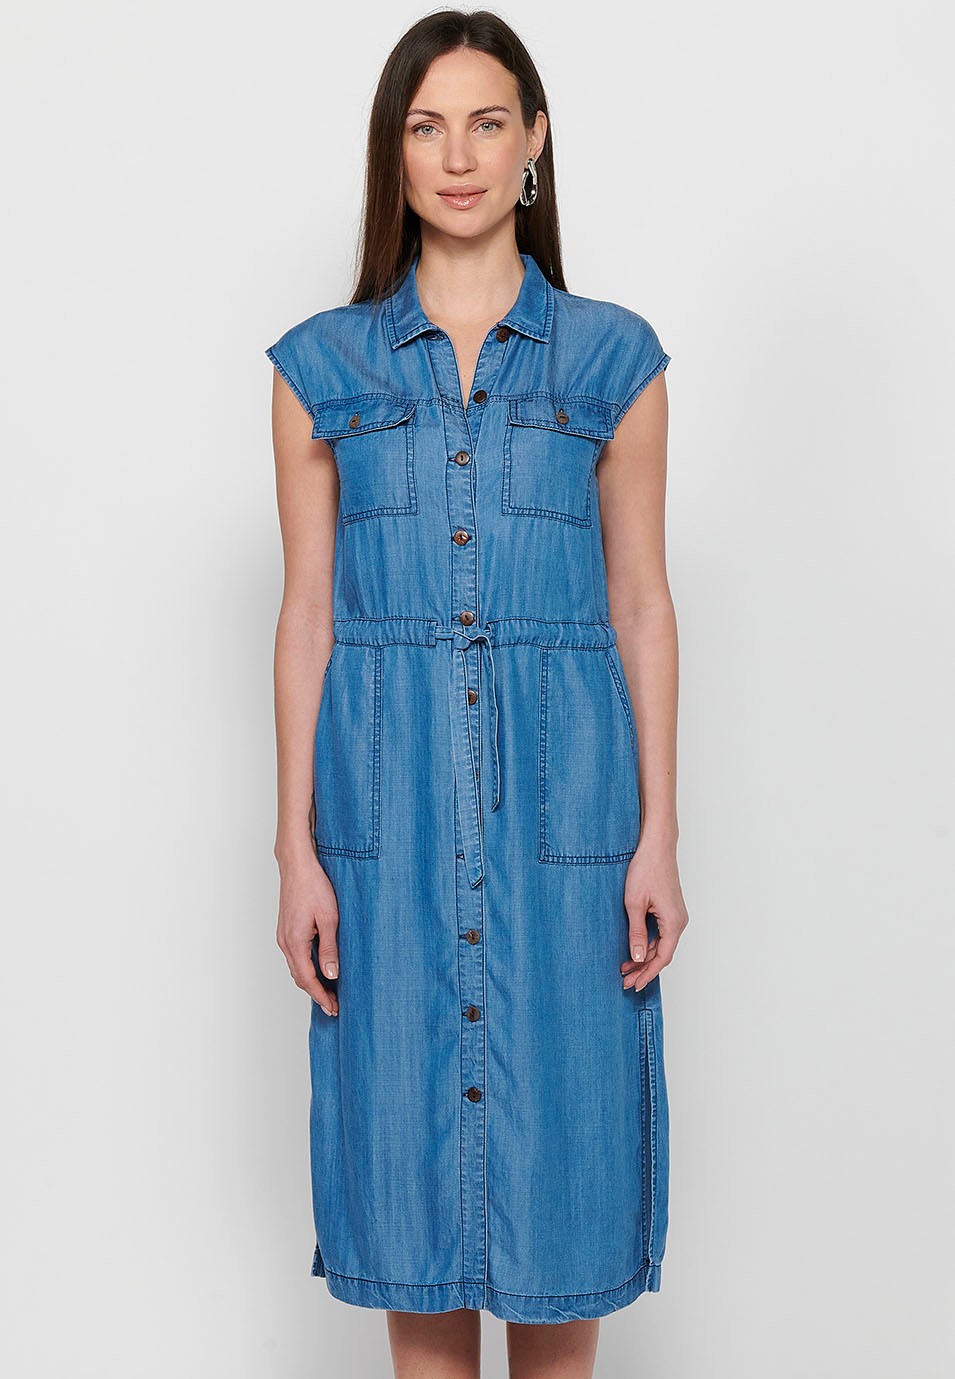 Ärmelloses, langes Damenkleid im Hemdstil mit verstellbarer Taille, Kordelzug und Knopfverschluss vorne in Blau 4